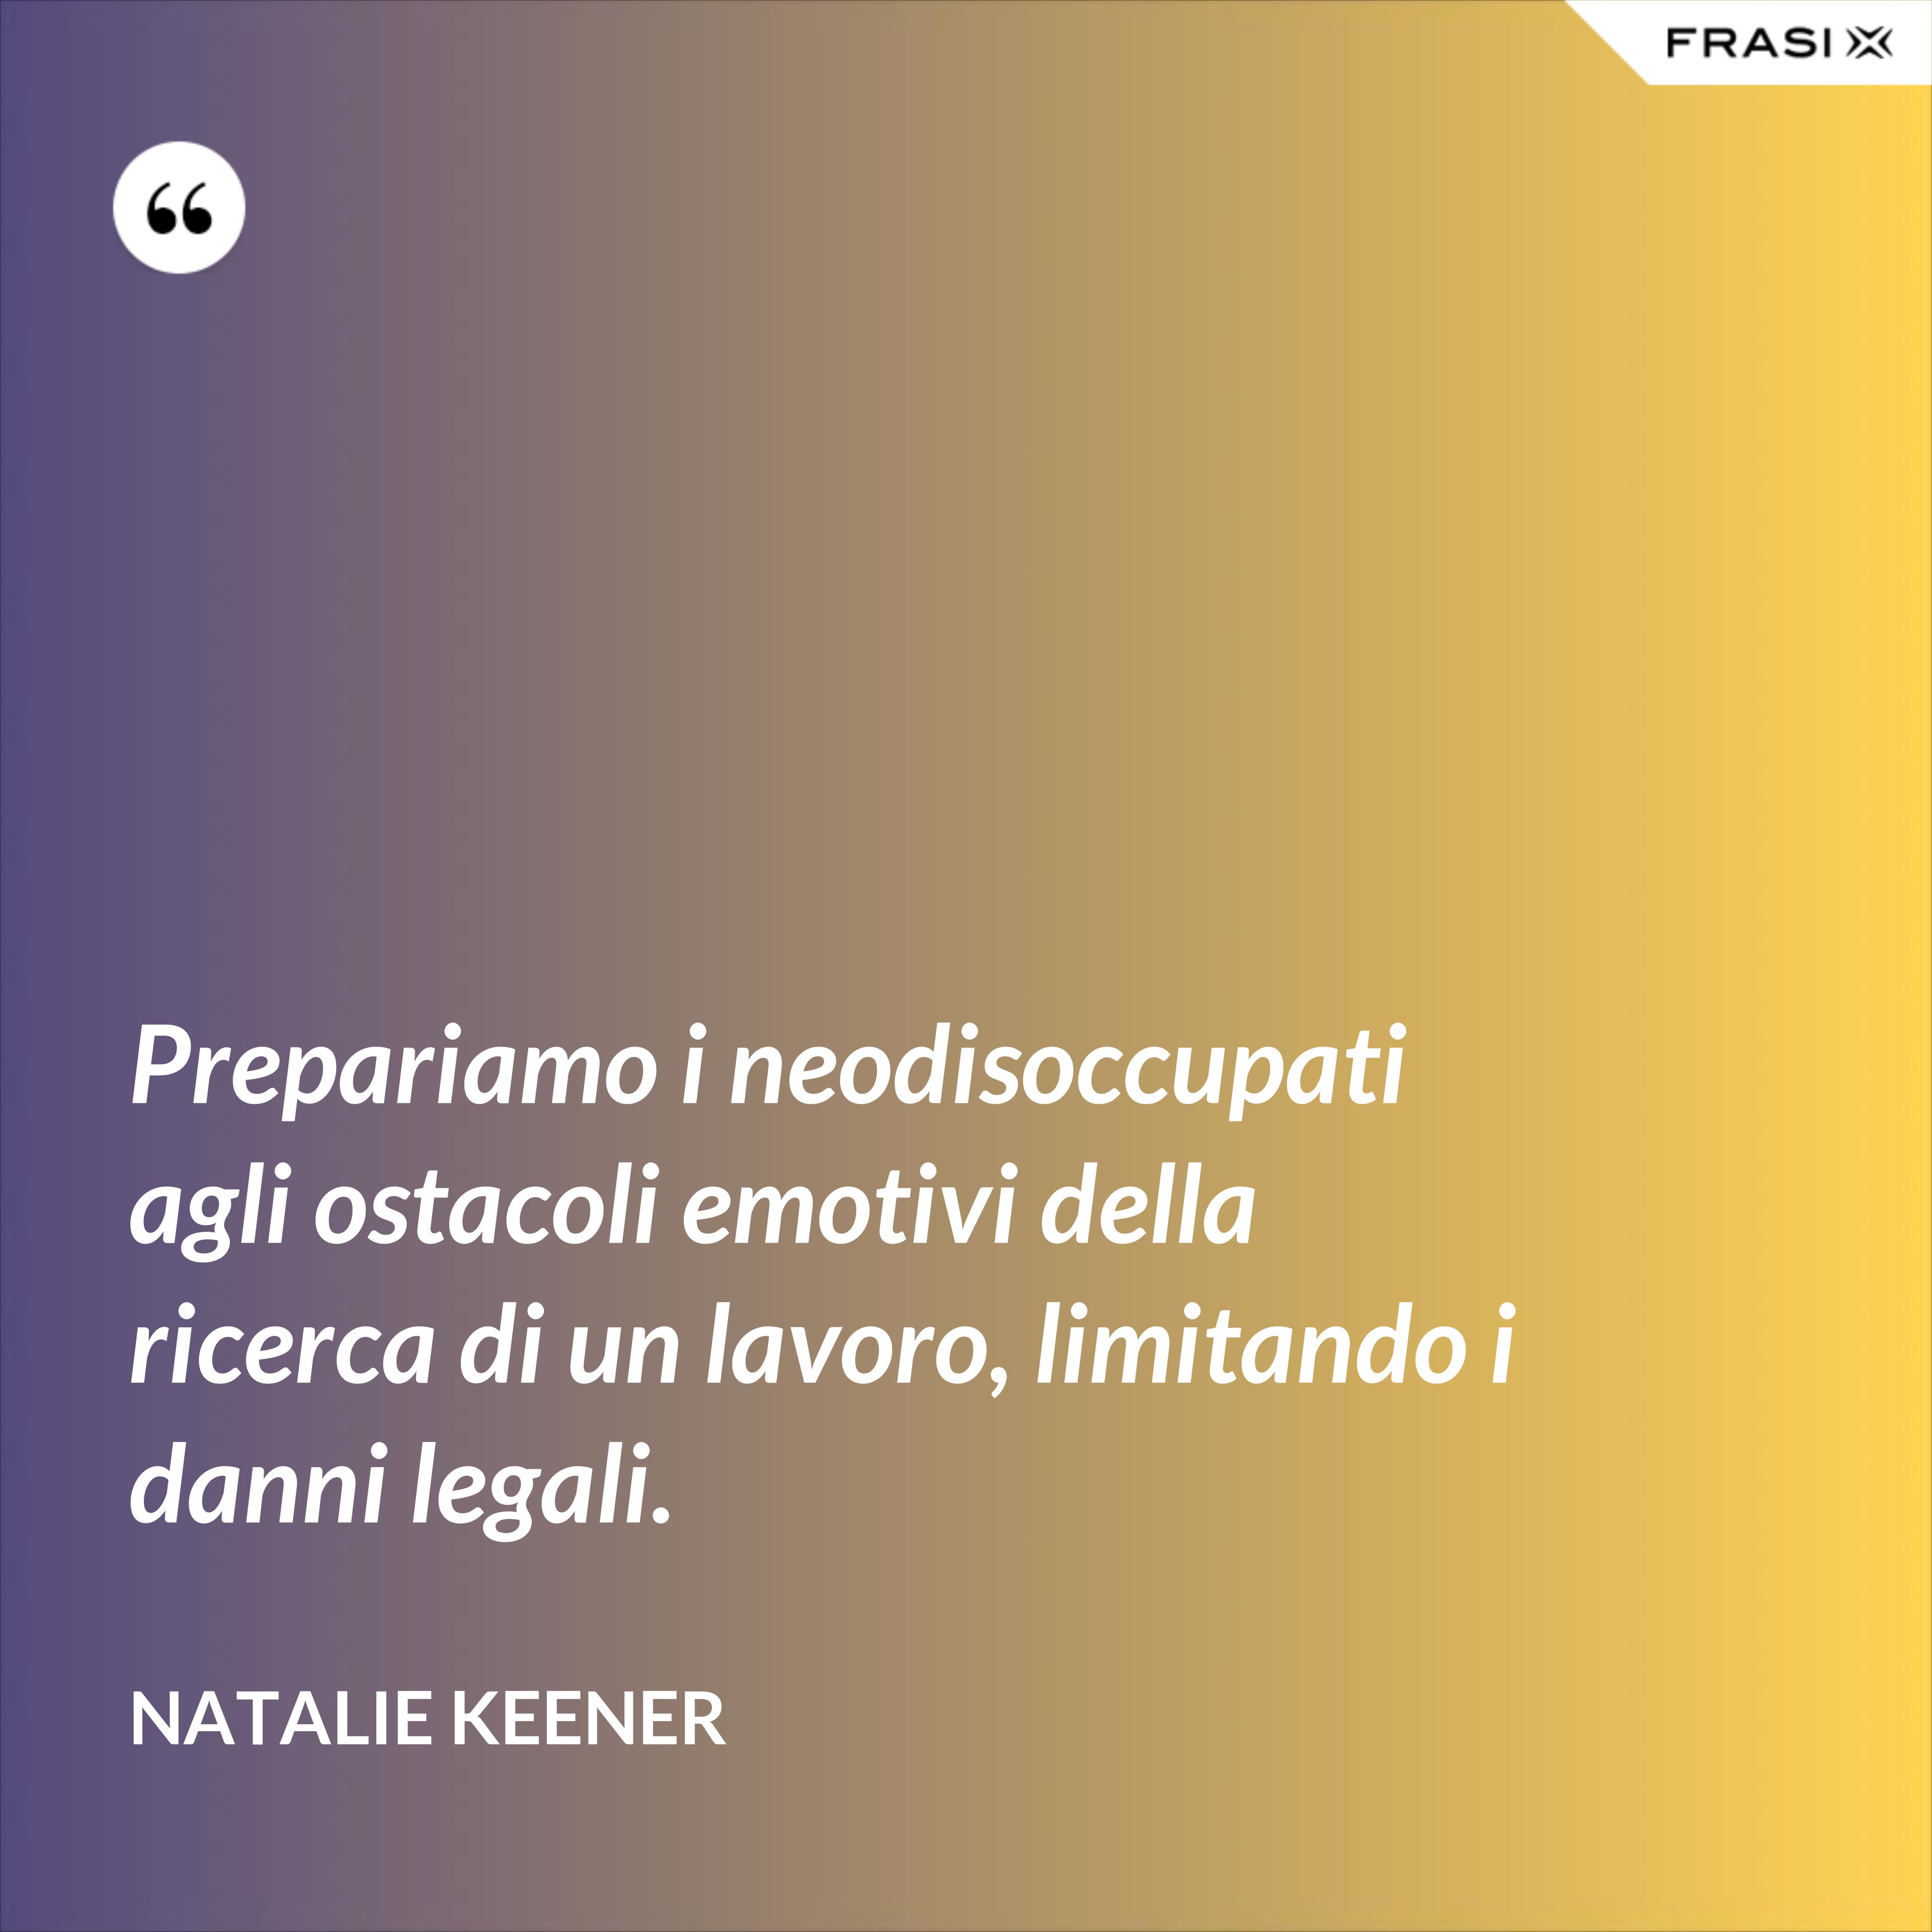 Prepariamo i neodisoccupati agli ostacoli emotivi della ricerca di un lavoro, limitando i danni legali. - Natalie Keener